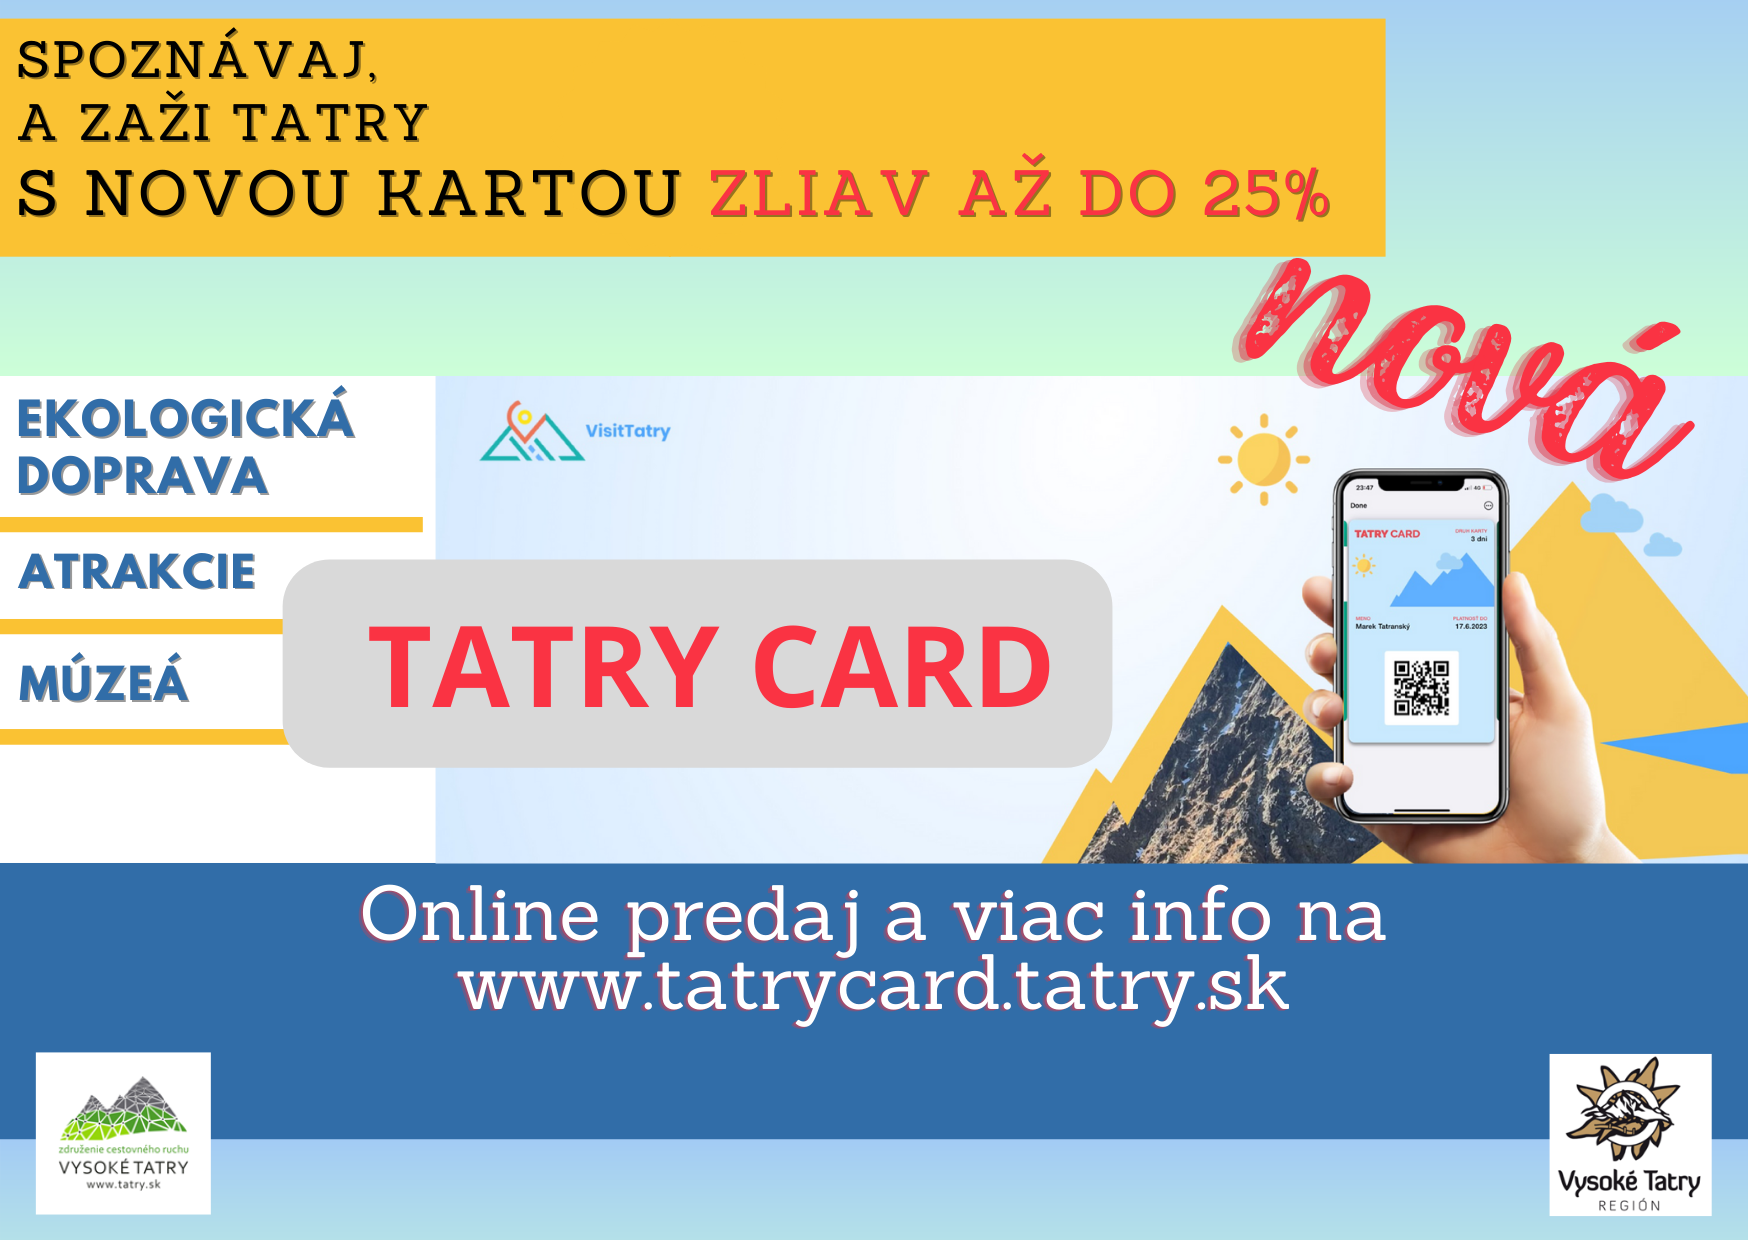 Regionálna karta Tatry Card, podporujúca cestovný ruch vo Vysokých Tatrách, prichádza v sezóne 2023/2024 opäť!